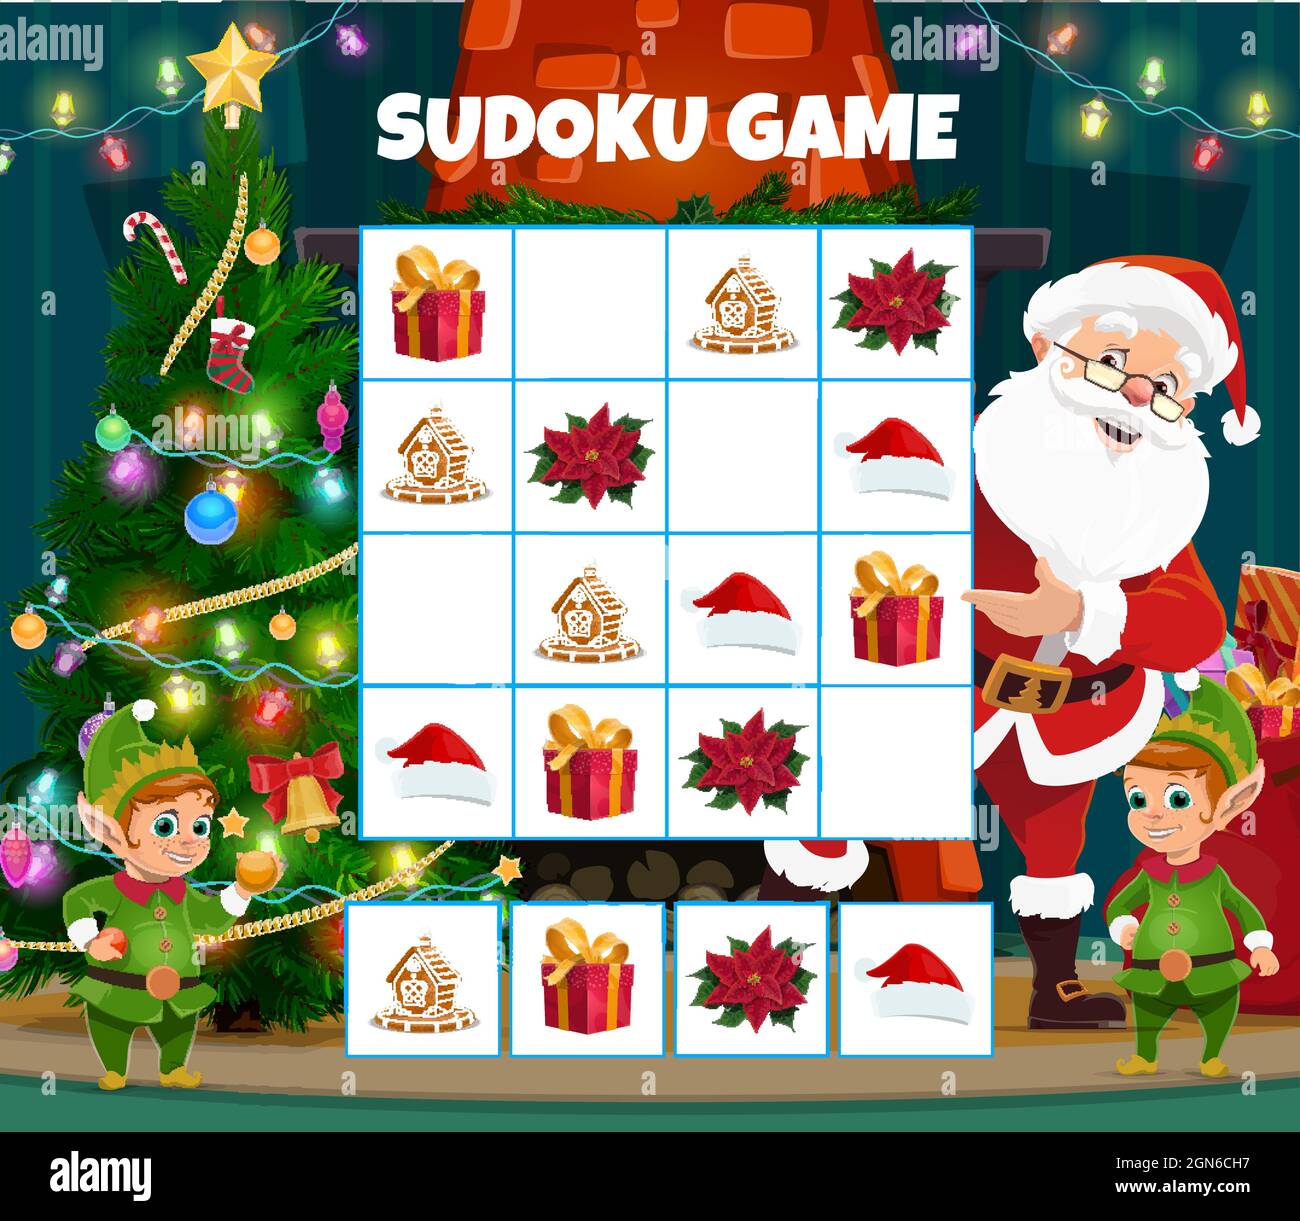 Niños juego de sudoku de Navidad con regalos de vacaciones, sombrero de  Santa y poinsettia, galleta de pan de jengibre. Rompecabezas de lógica  infantil, niños enigma con Santa Claus y elfs personajes,